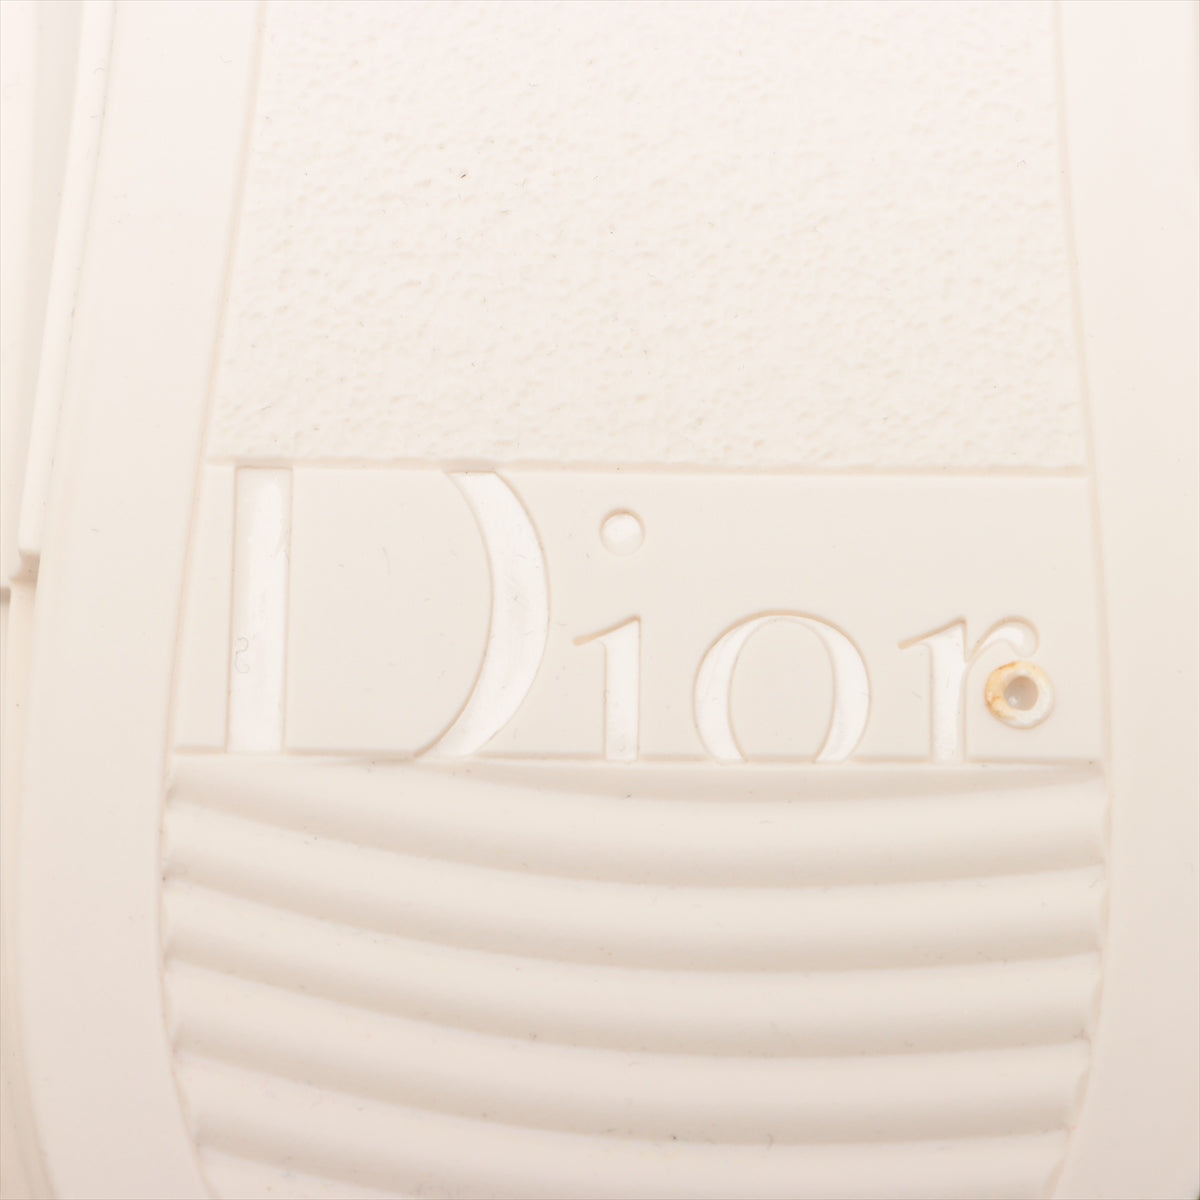 Dior Fabric High-Cut Sneaker 40 Men Beige LS1121